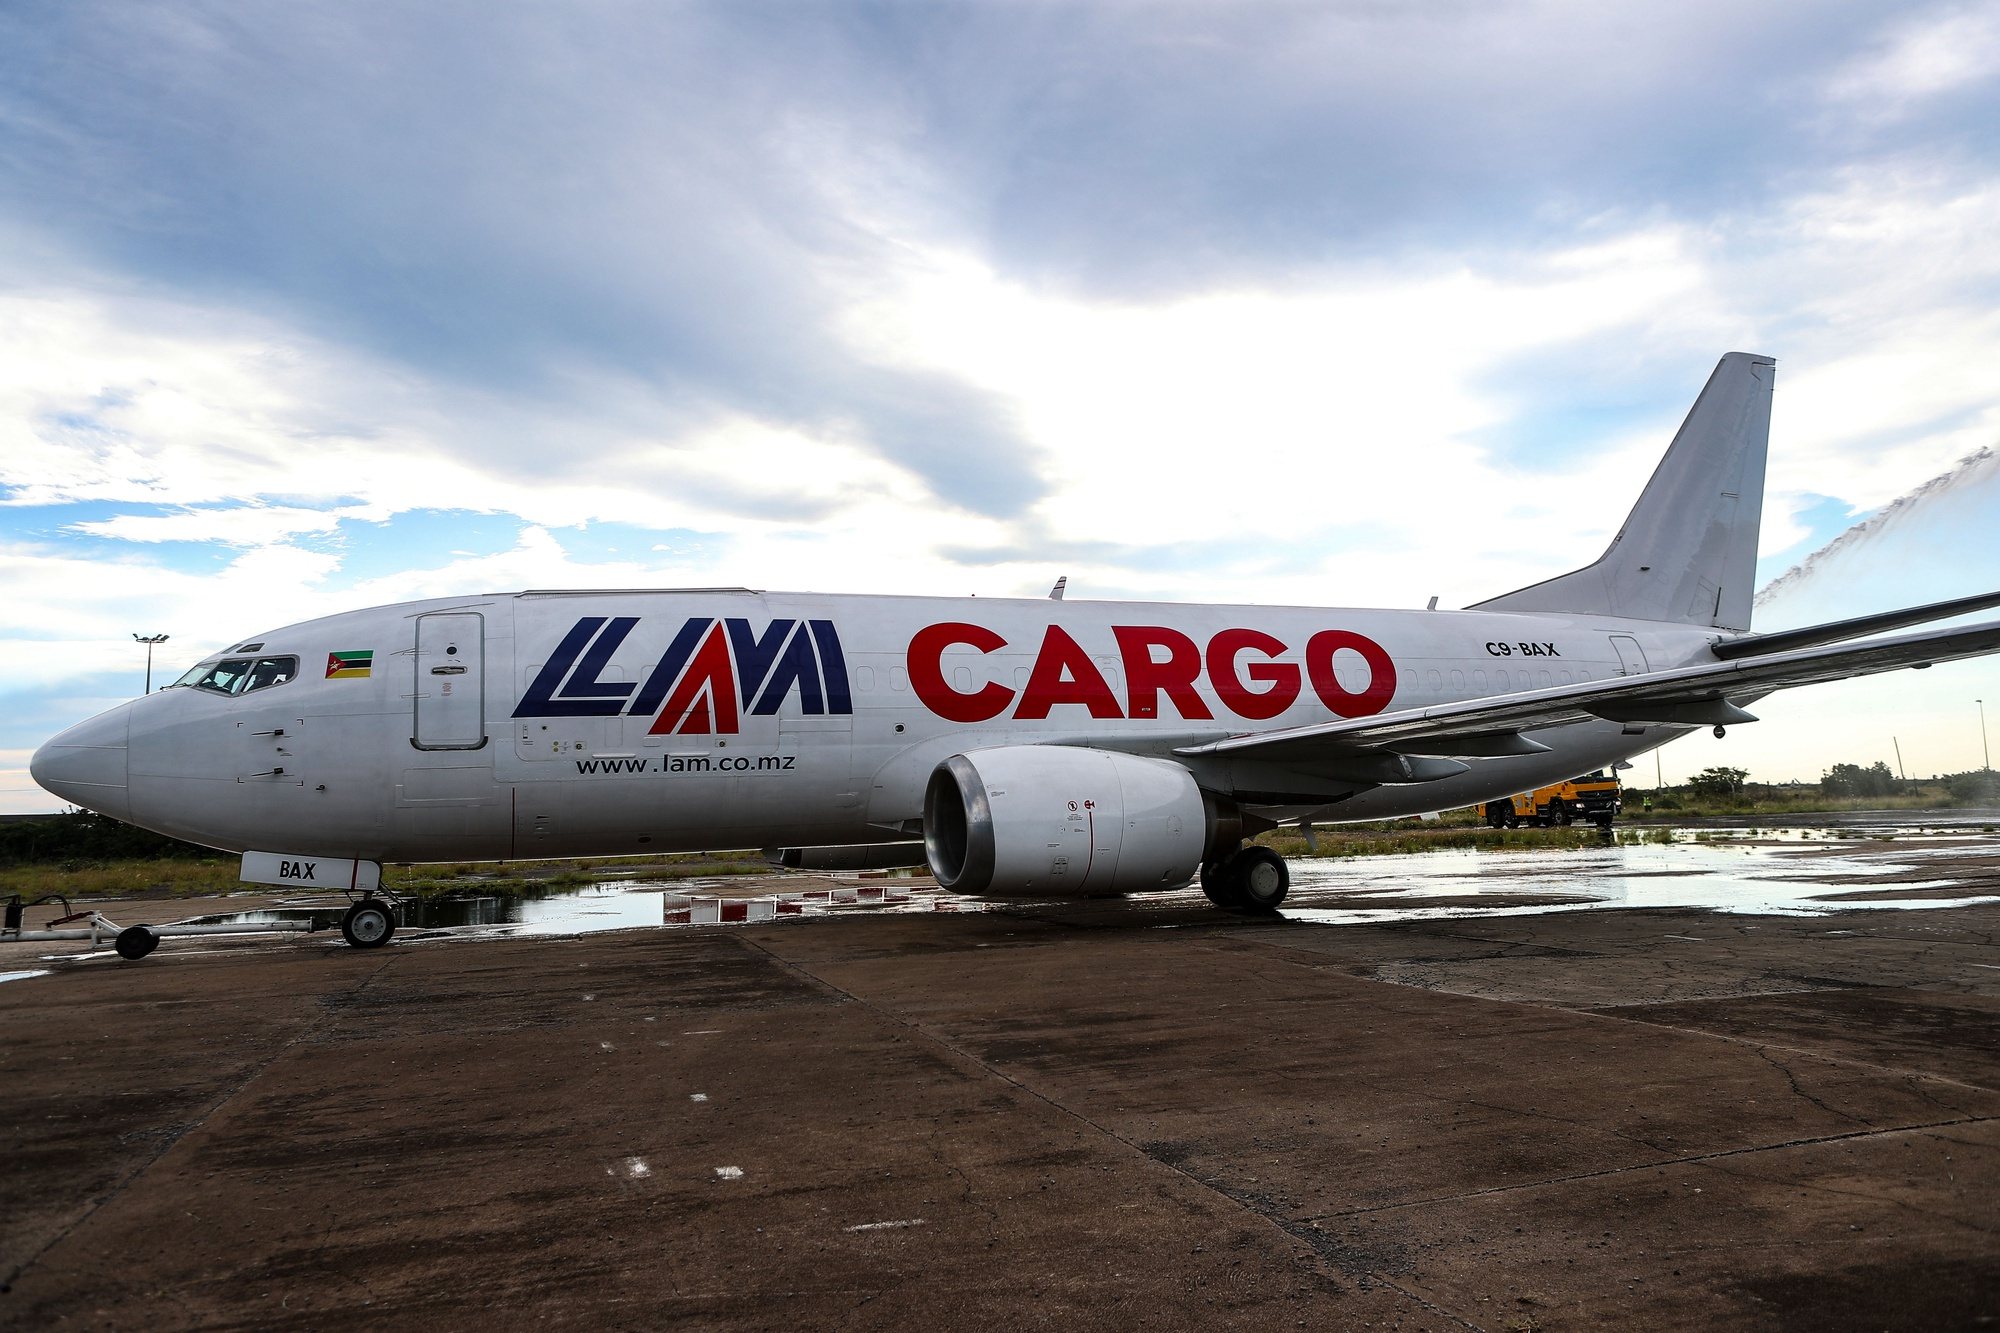 A moçambicana LAM vai operar a partir de 25 de março o seu primeiro avião cargueiro, um Boeing 737-300F apresentado hoje pela companhia, num investimento de três milhões de dólares, disse à Lusa o diretor-geral, Maputo, Moçambique, 13 de março de 2024. LUÍSA NHANTUMBO/LUSA